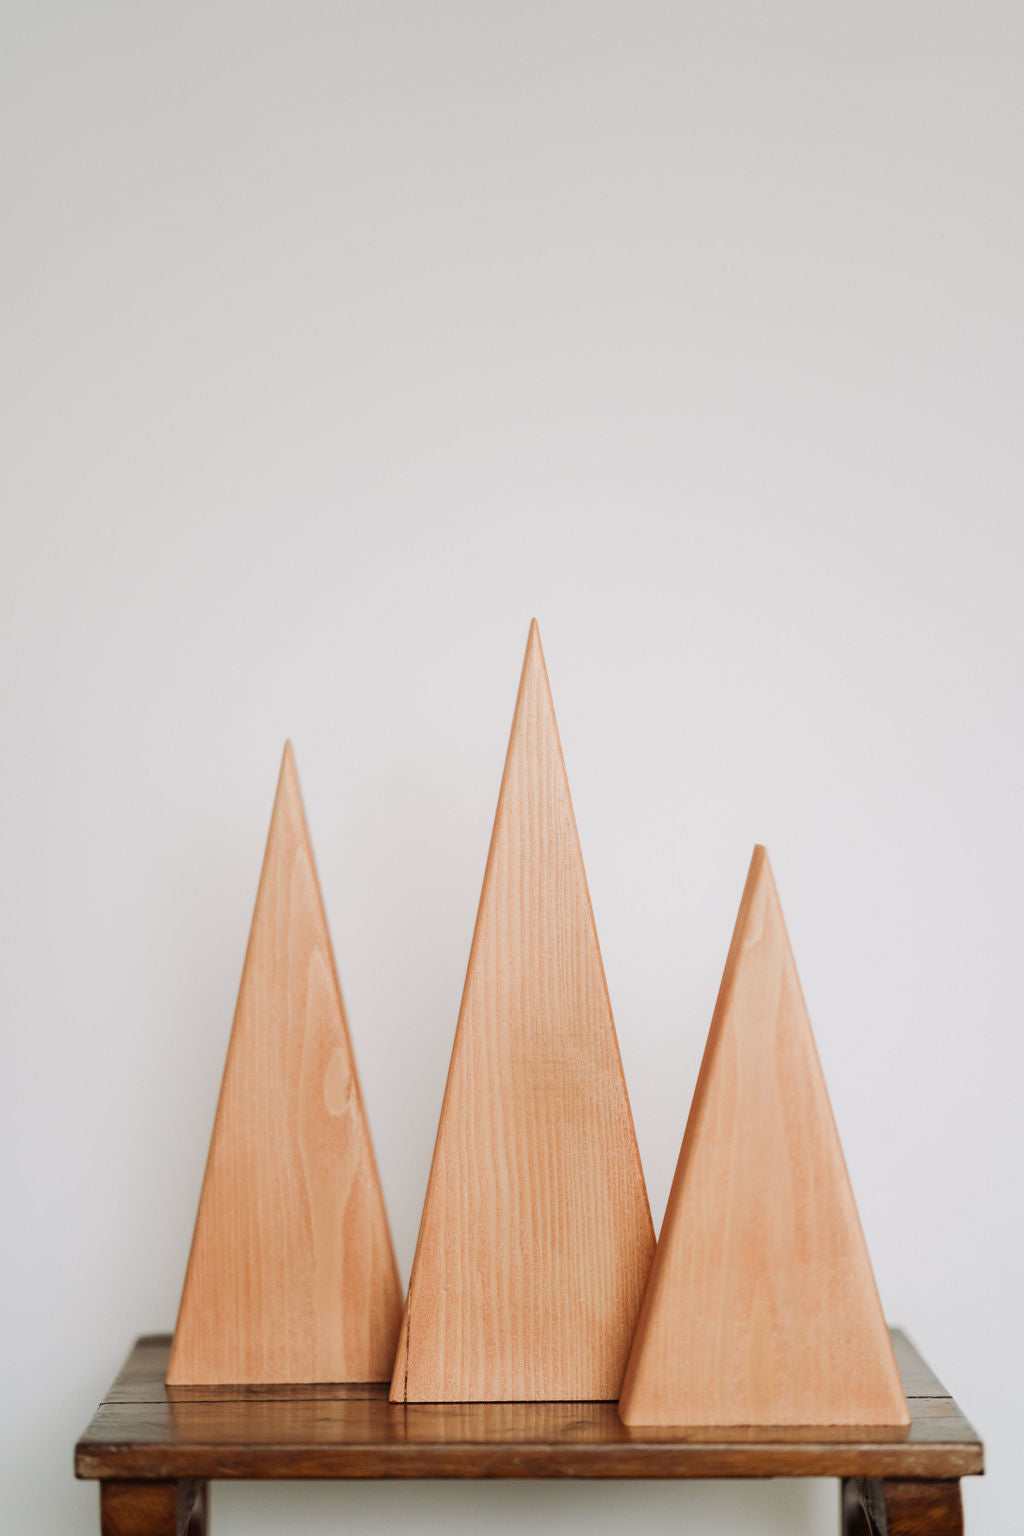 Decoratiune brad din lemn, set 3 braduti cupru